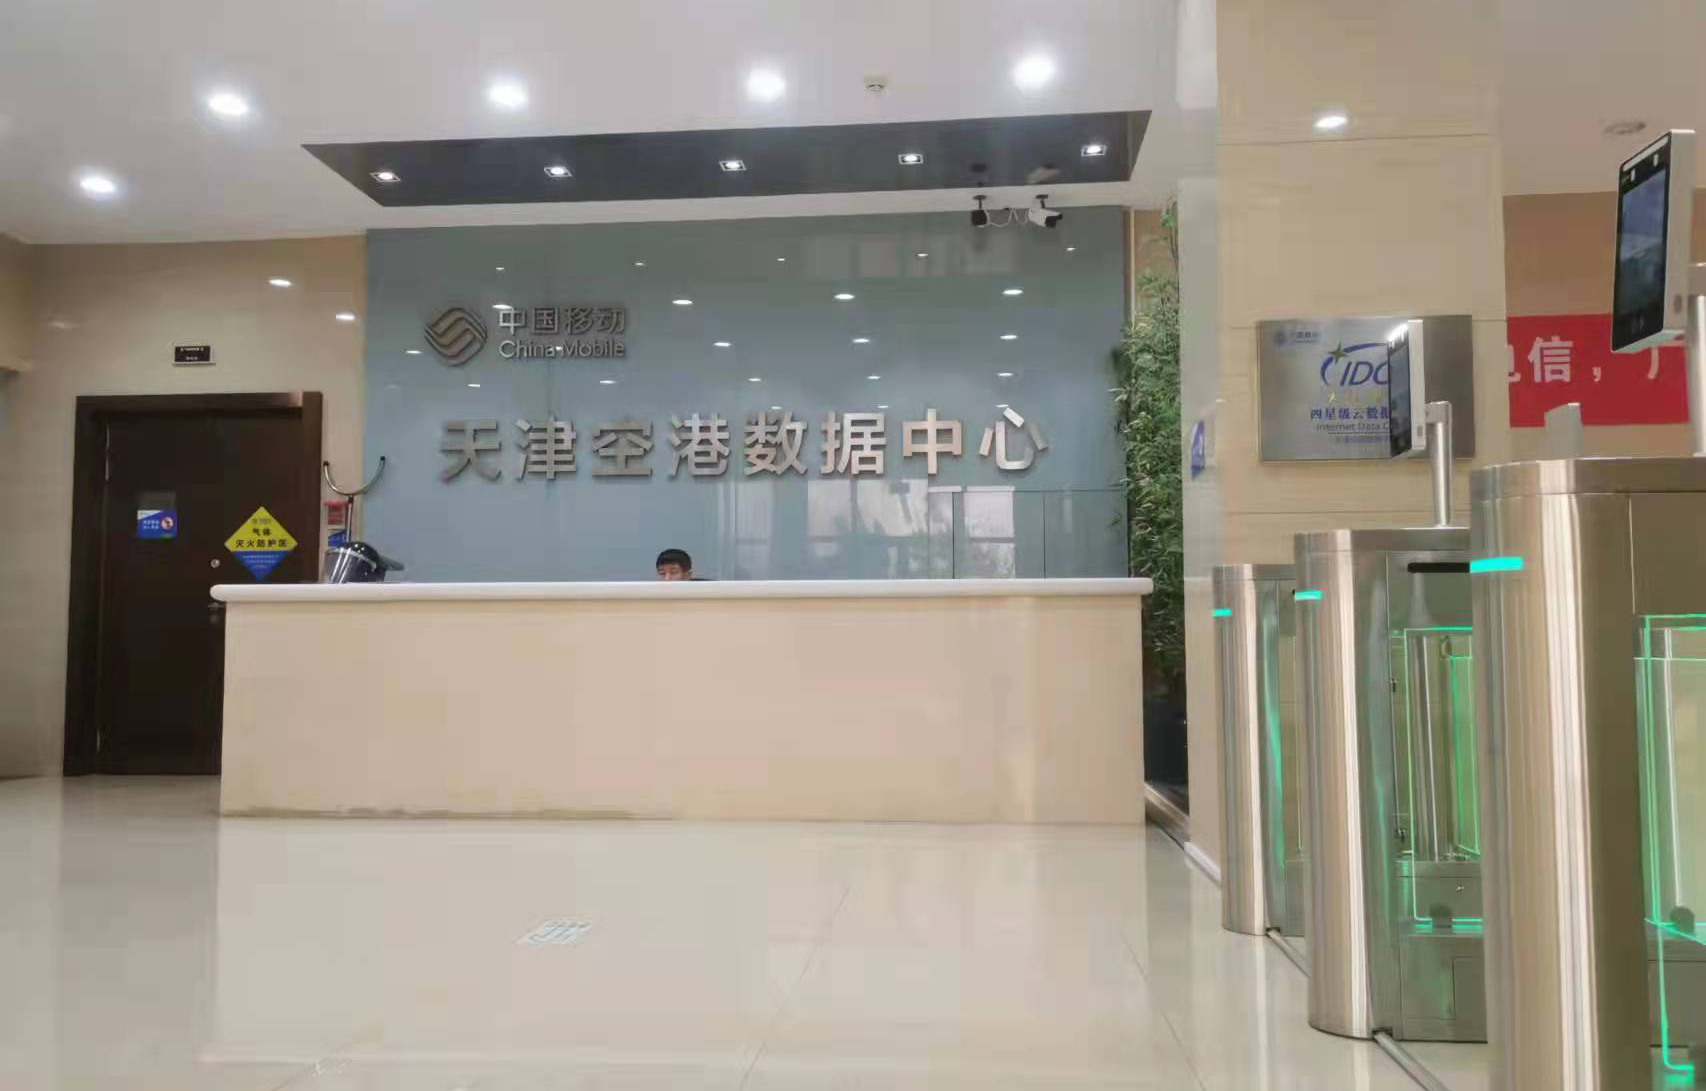 中国移动天津分公司一卡通系统成功案例